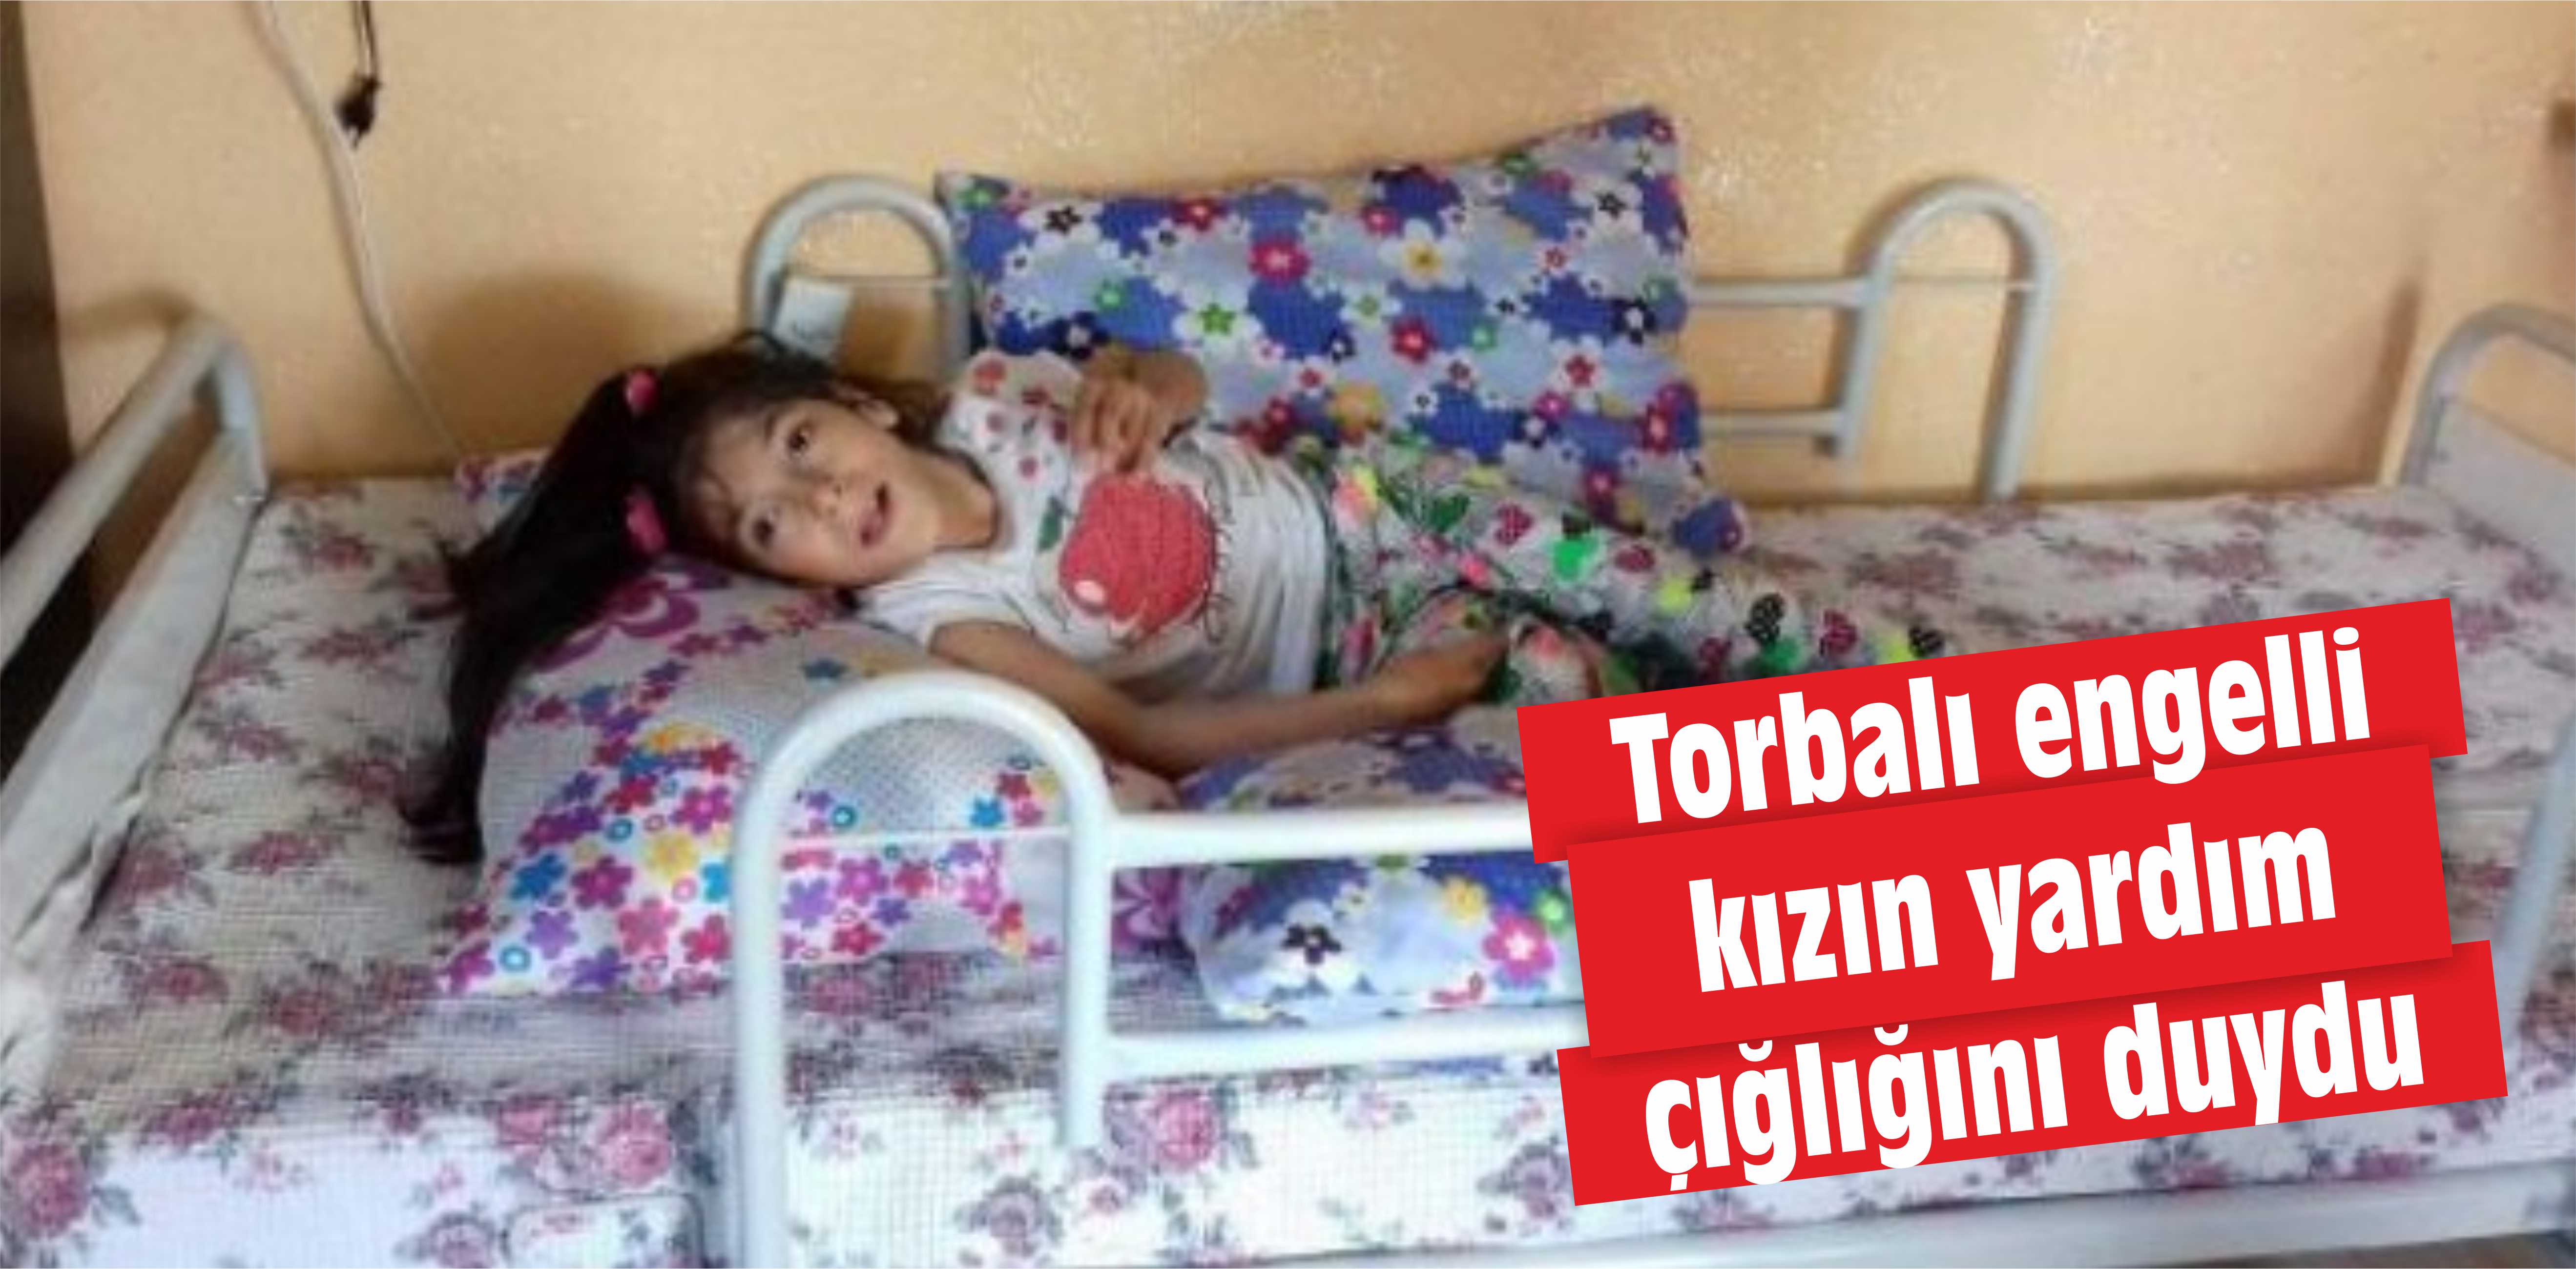 İzmir engelli kızın yardım çığlığını duydu